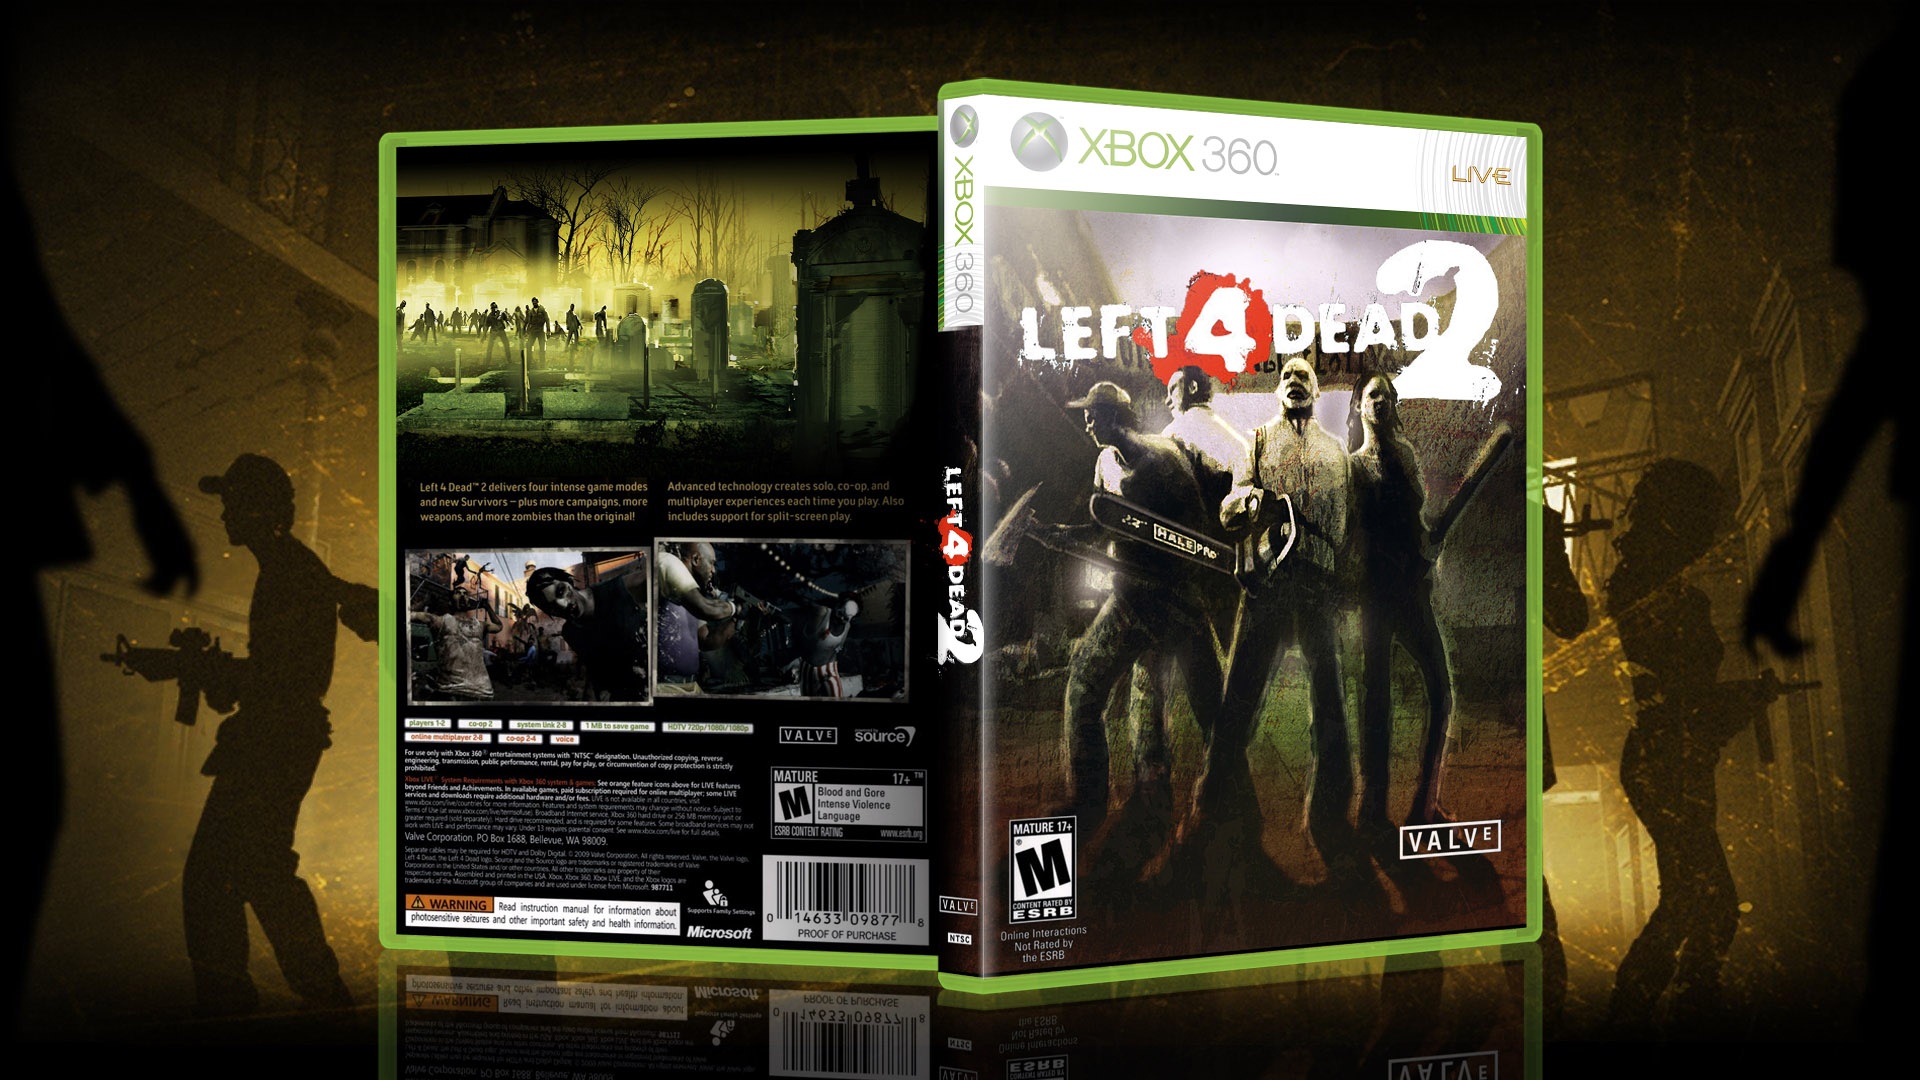 Half life xbox. Хбокс 360 left 4 Dead. Left 4 Dead 2 Xbox 360 этикетка. Left 4 Dead 2 Xbox 360 диск.